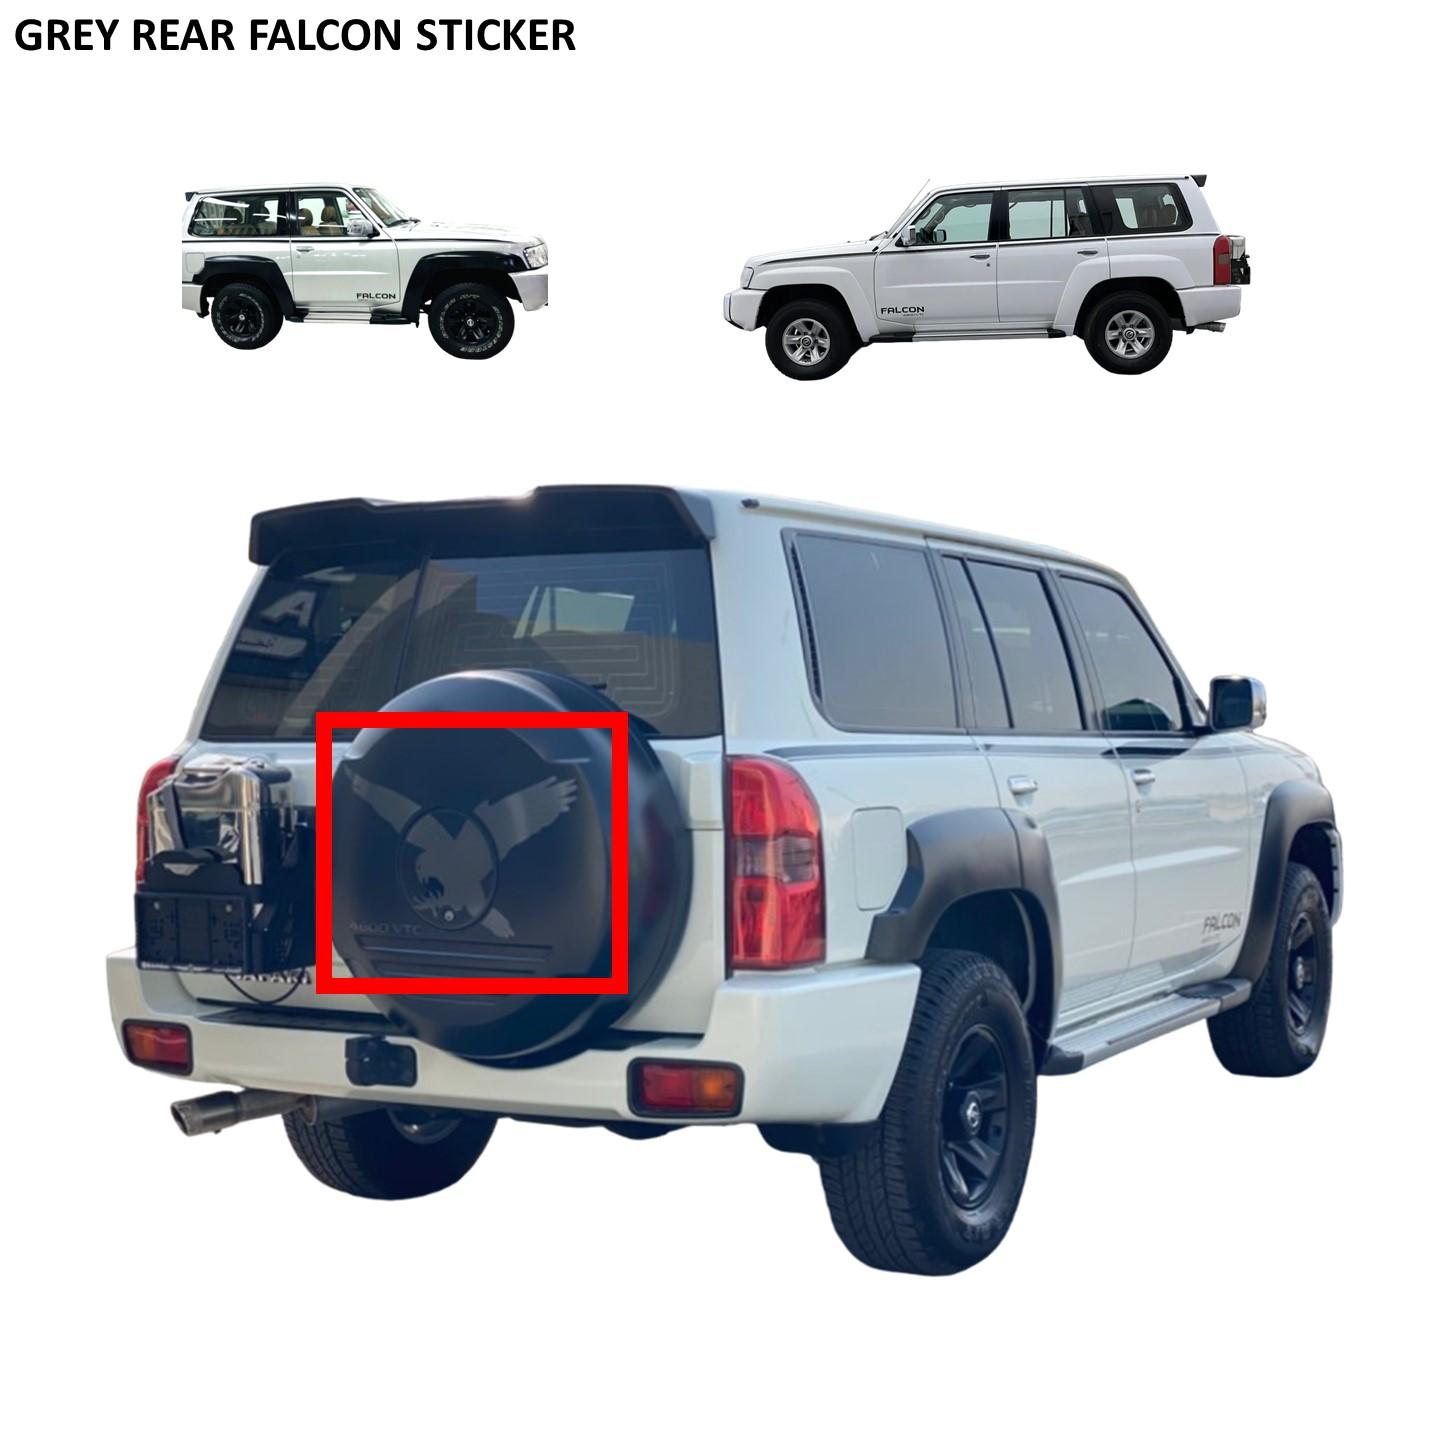 Rear Grey Falcon Sticker - Nissan Patrol Y61 VTC GU